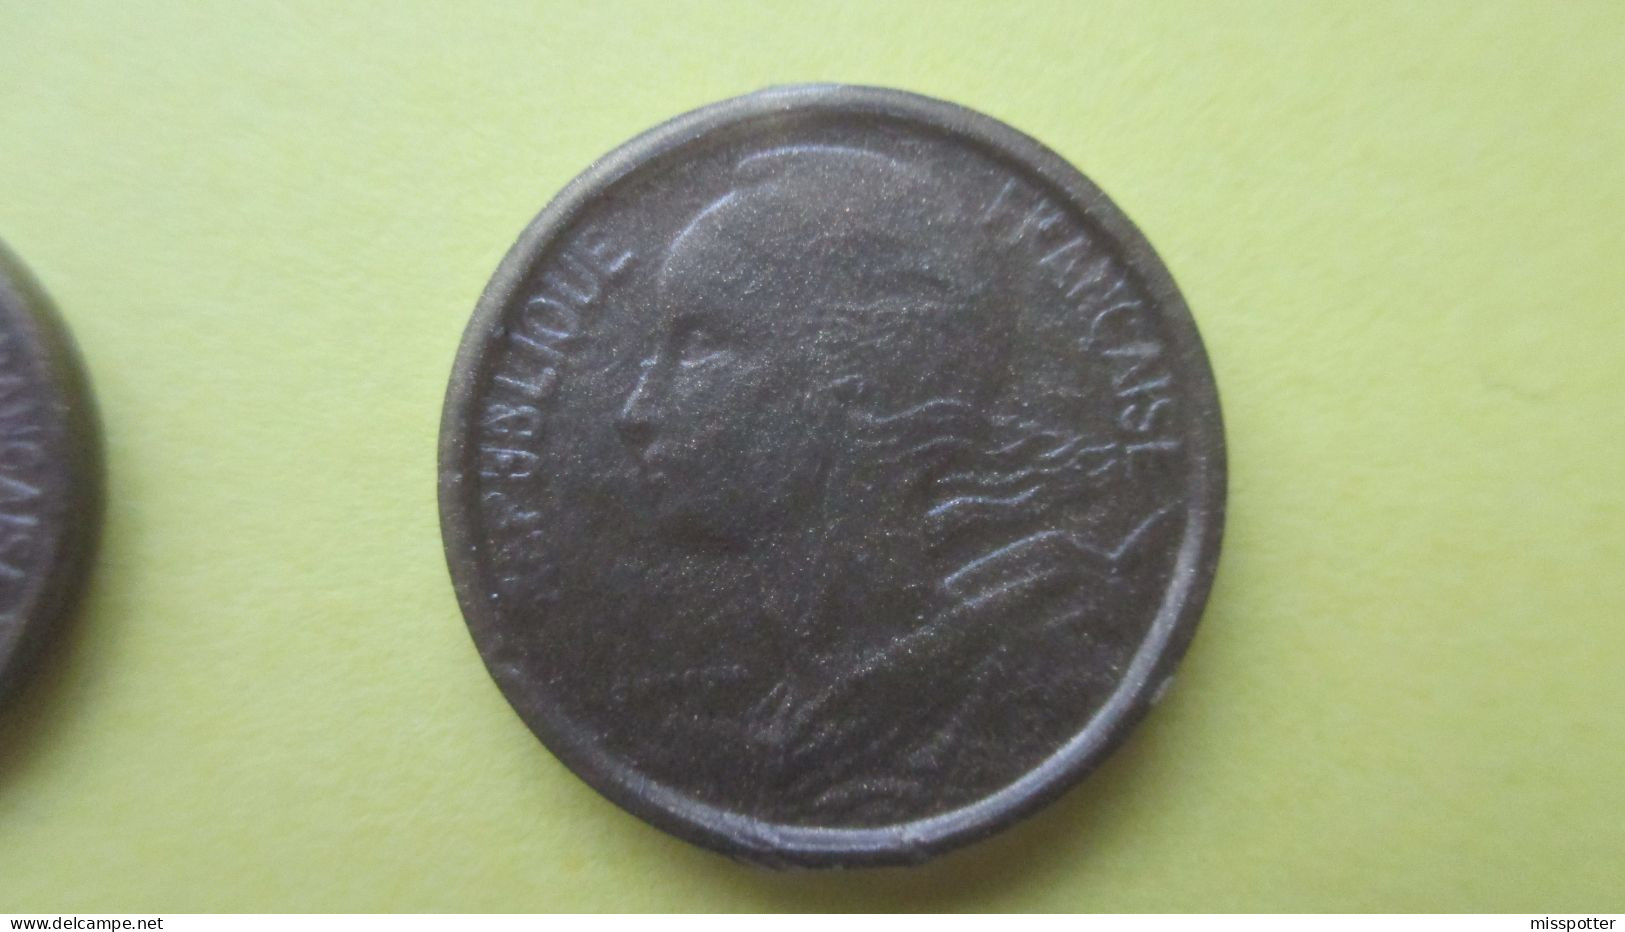 Lot de 11 pièces de monnaie factices plastique, Francs et Centimes, différentes